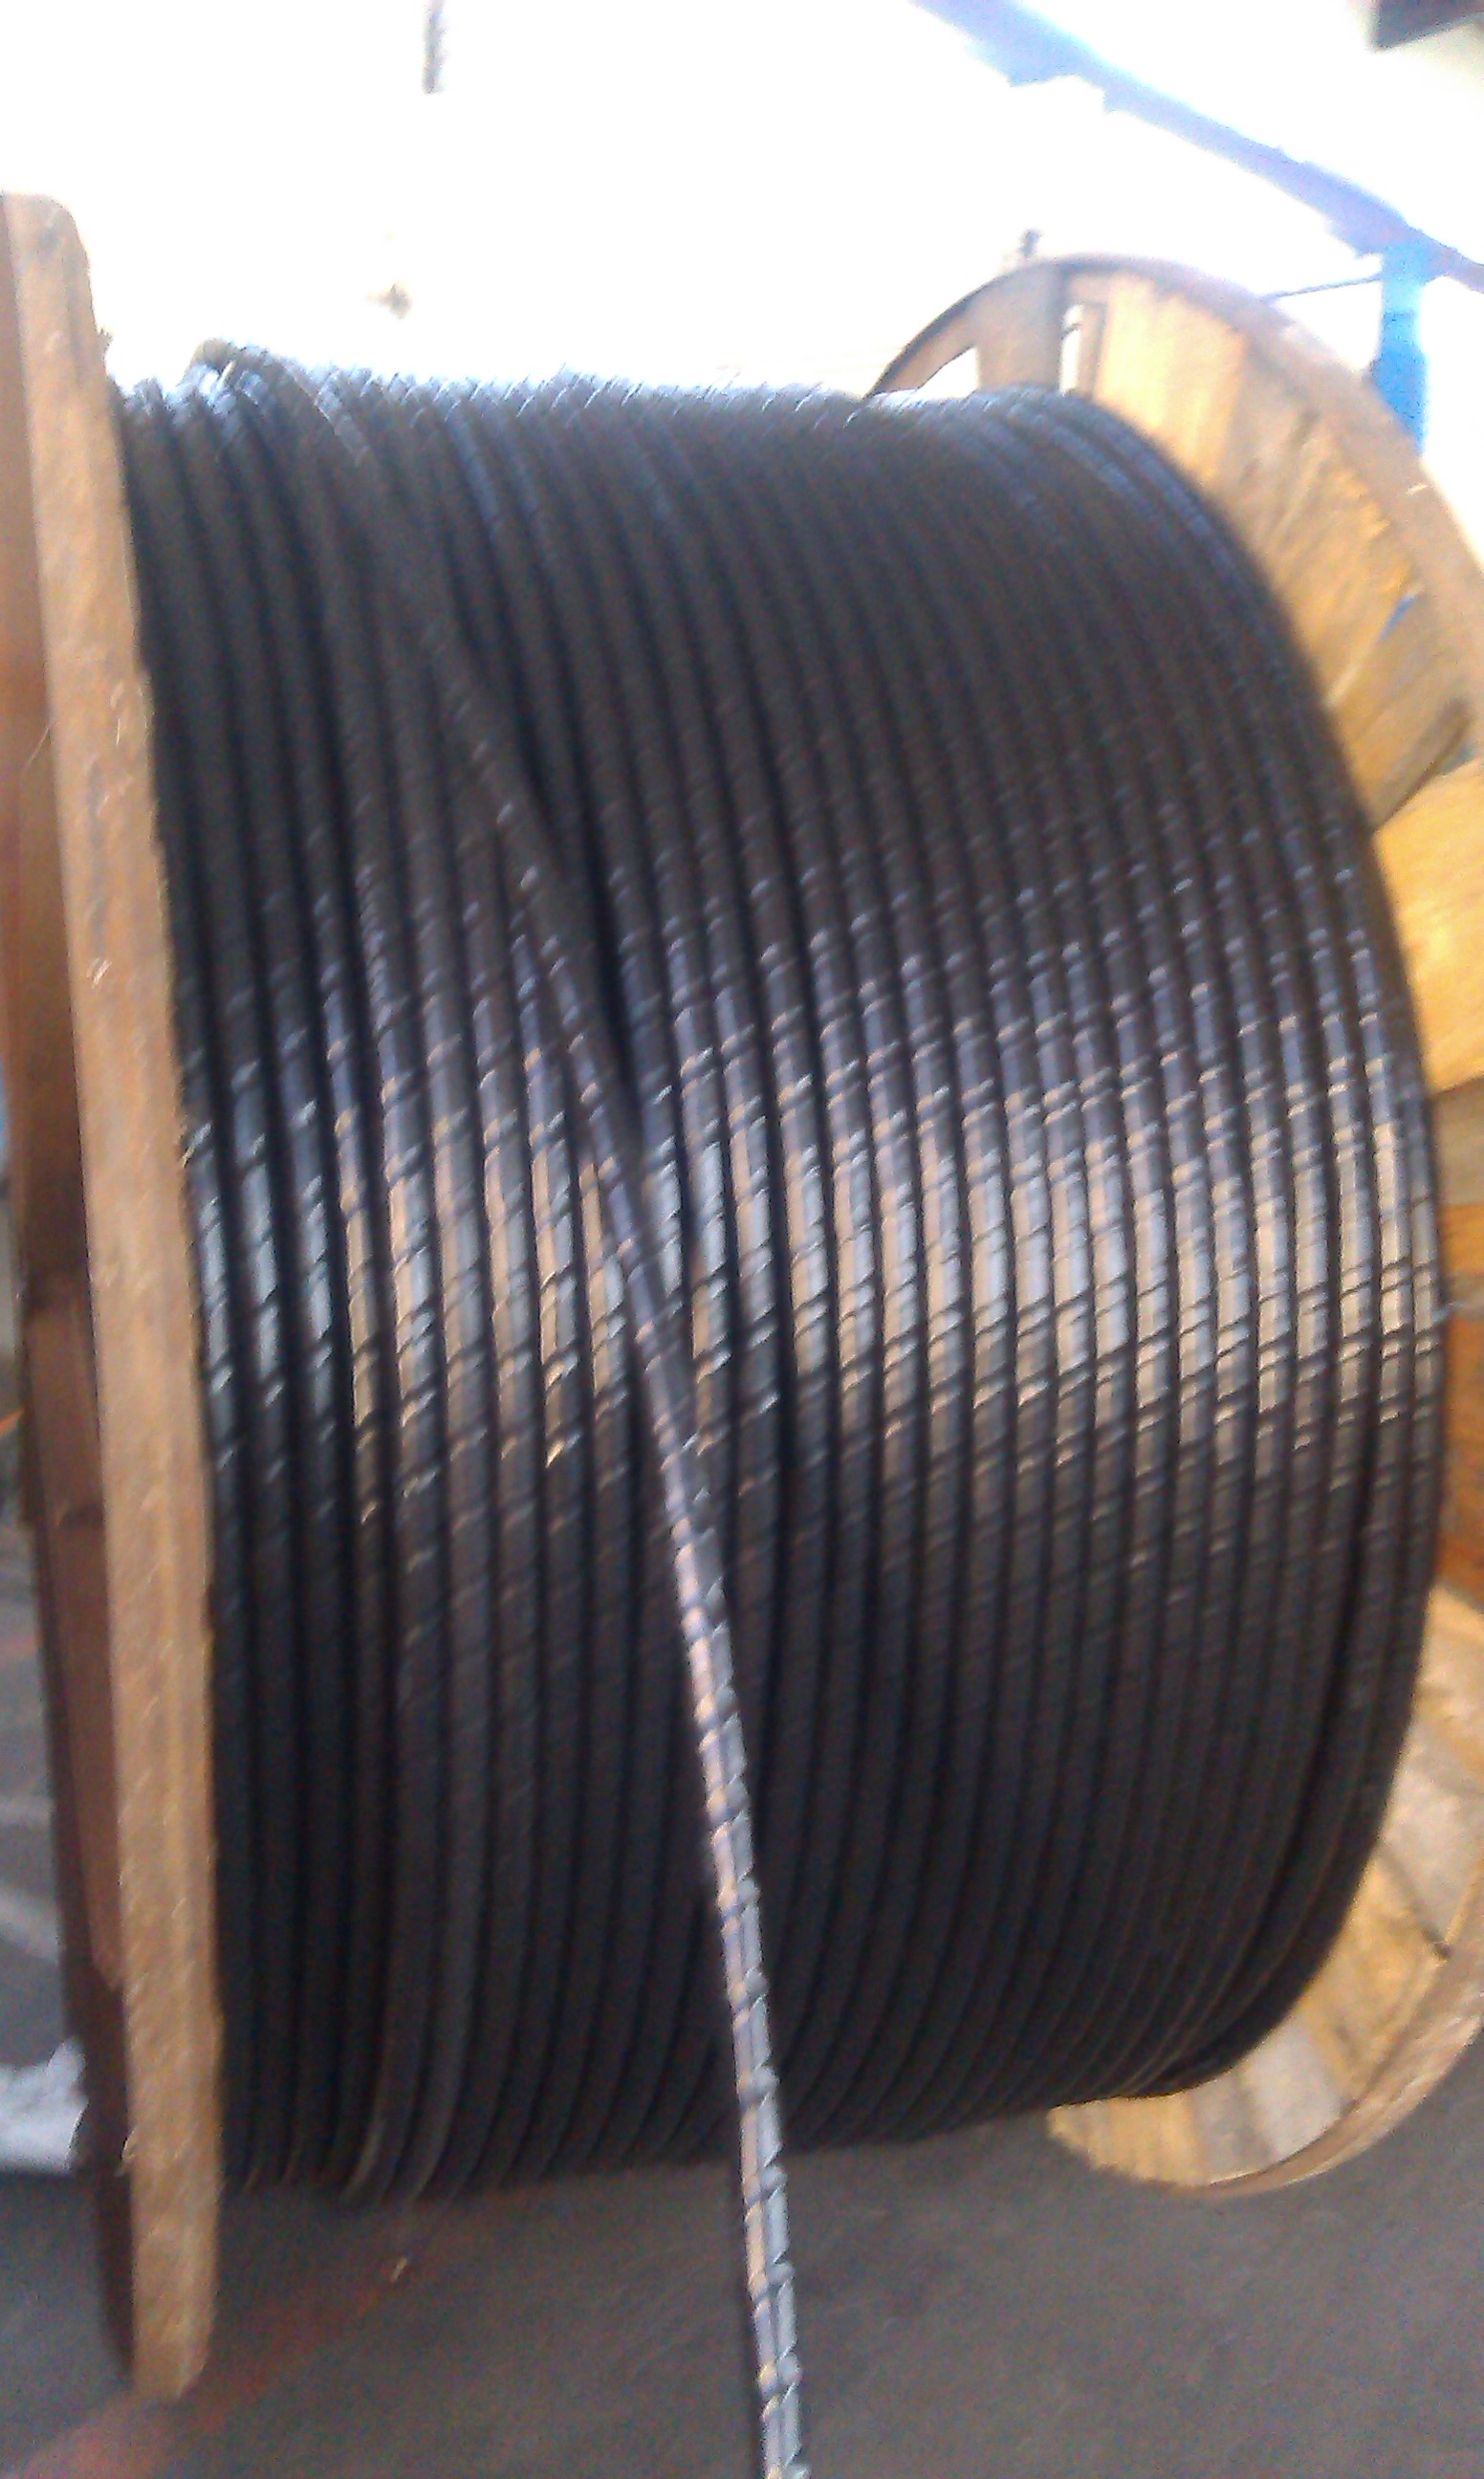 PVC电缆生产厂家 pvc电缆价格 pvc电缆规格型号_电线电缆栏目